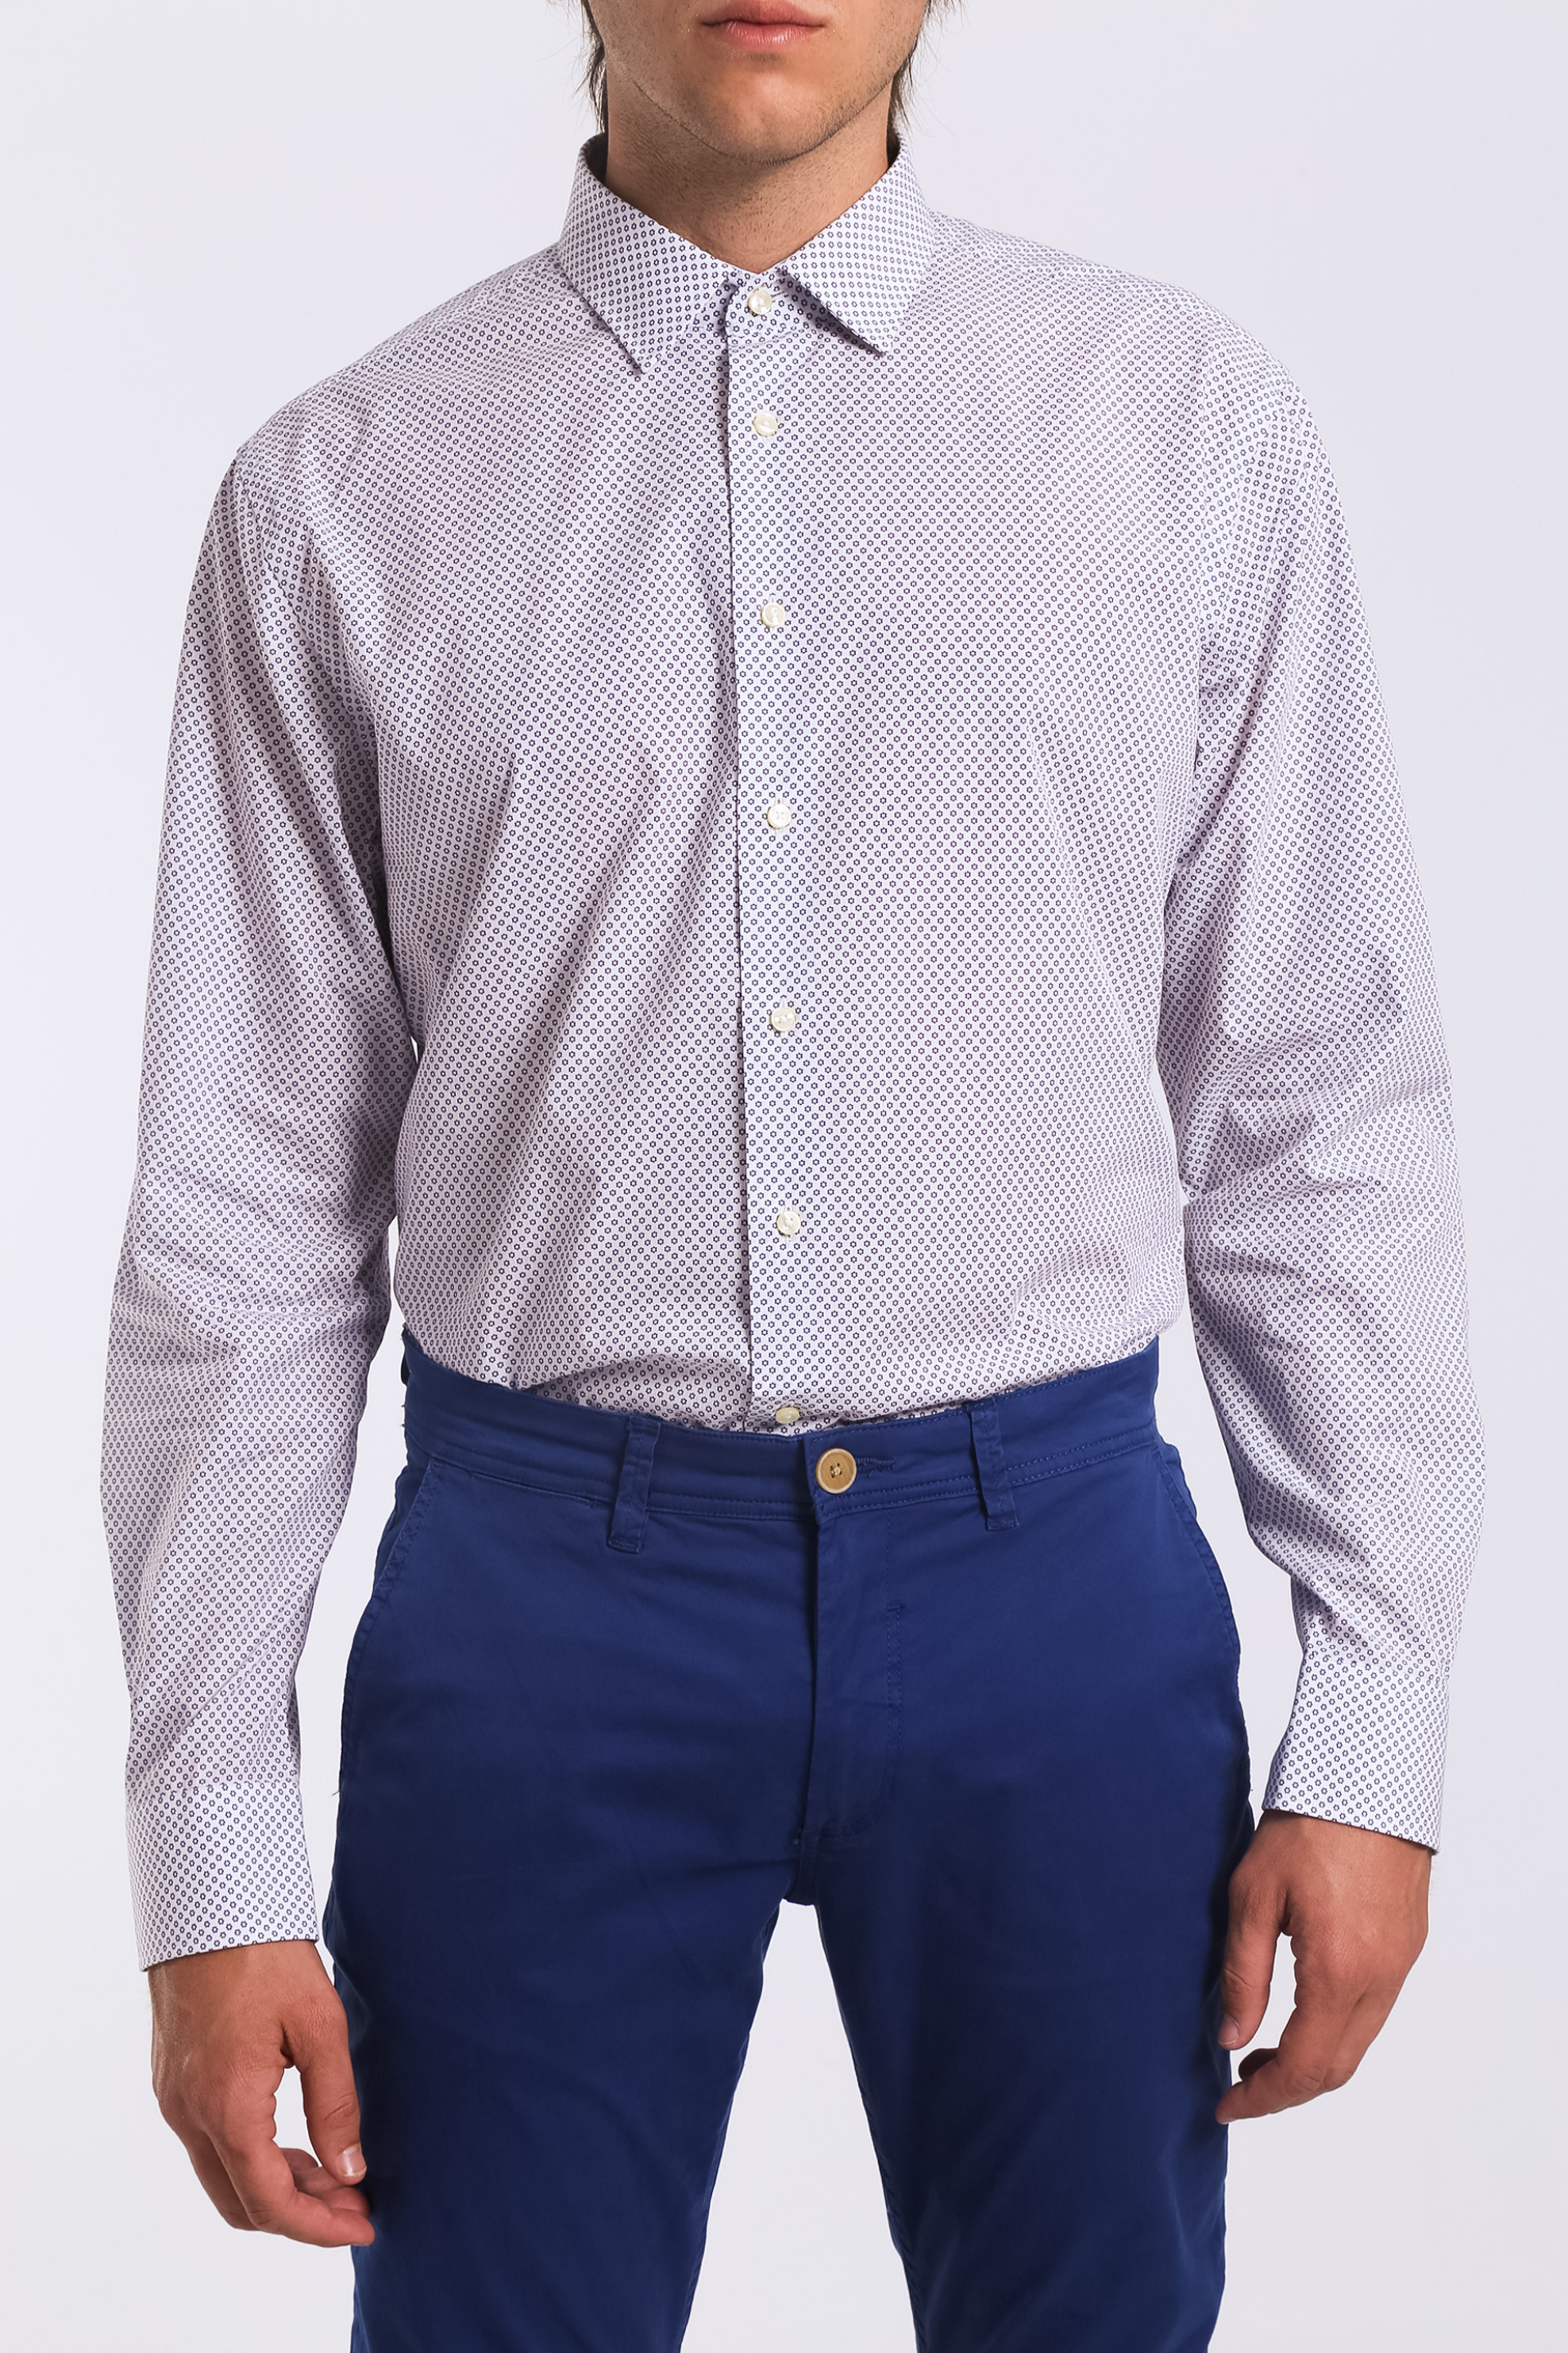 Ανδρικό πουκάμισο μονόχρωμο με μικροσχέδιο Arrow - 47-090251 Λευκό 3AR47-090251|AR019|40